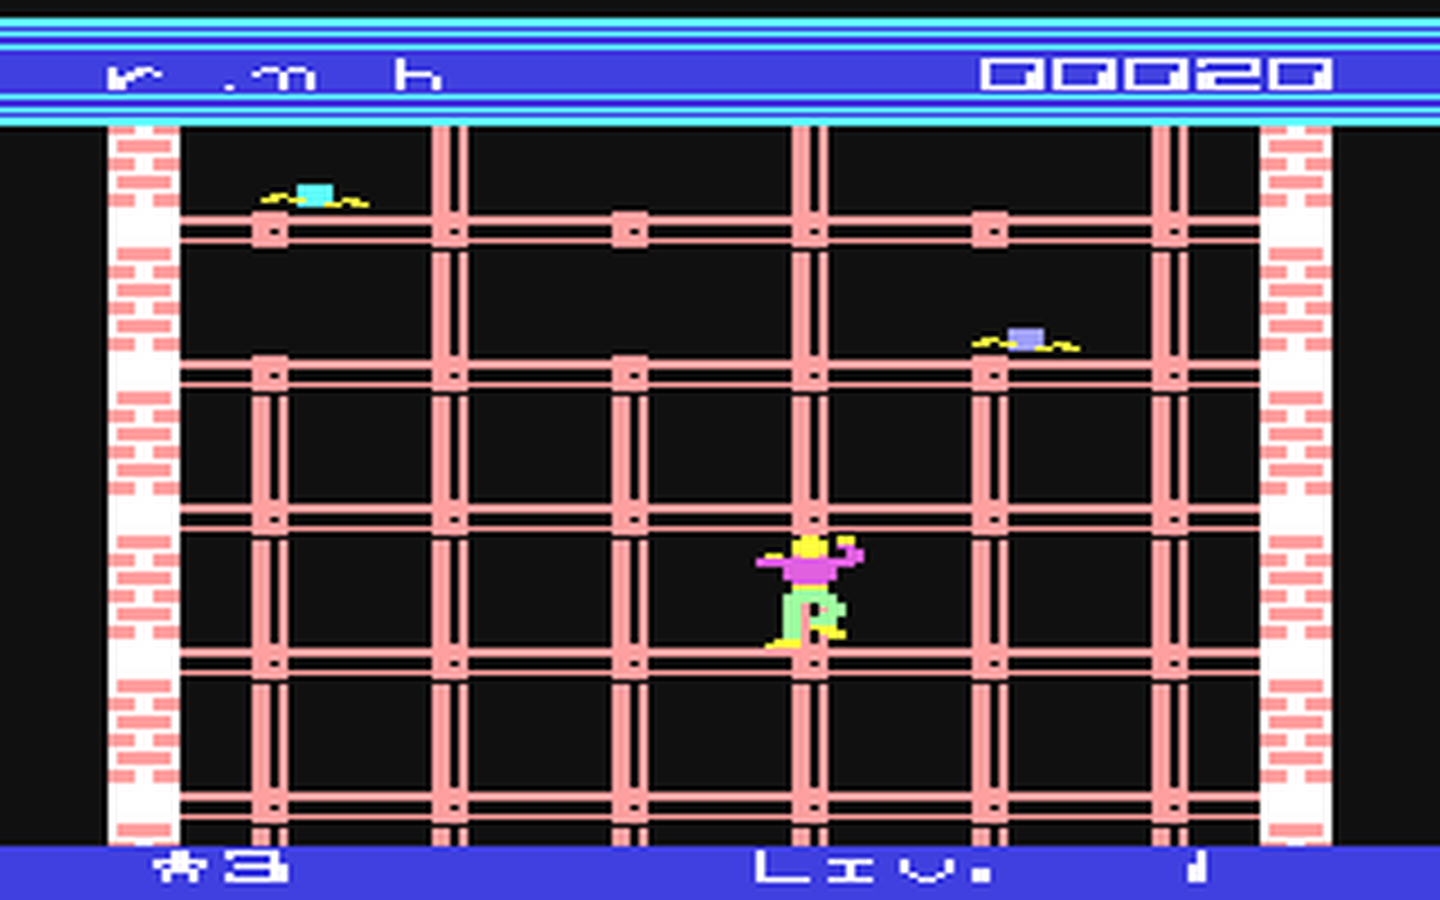 C64 GameBase Eiffel Mantra_Software 1985